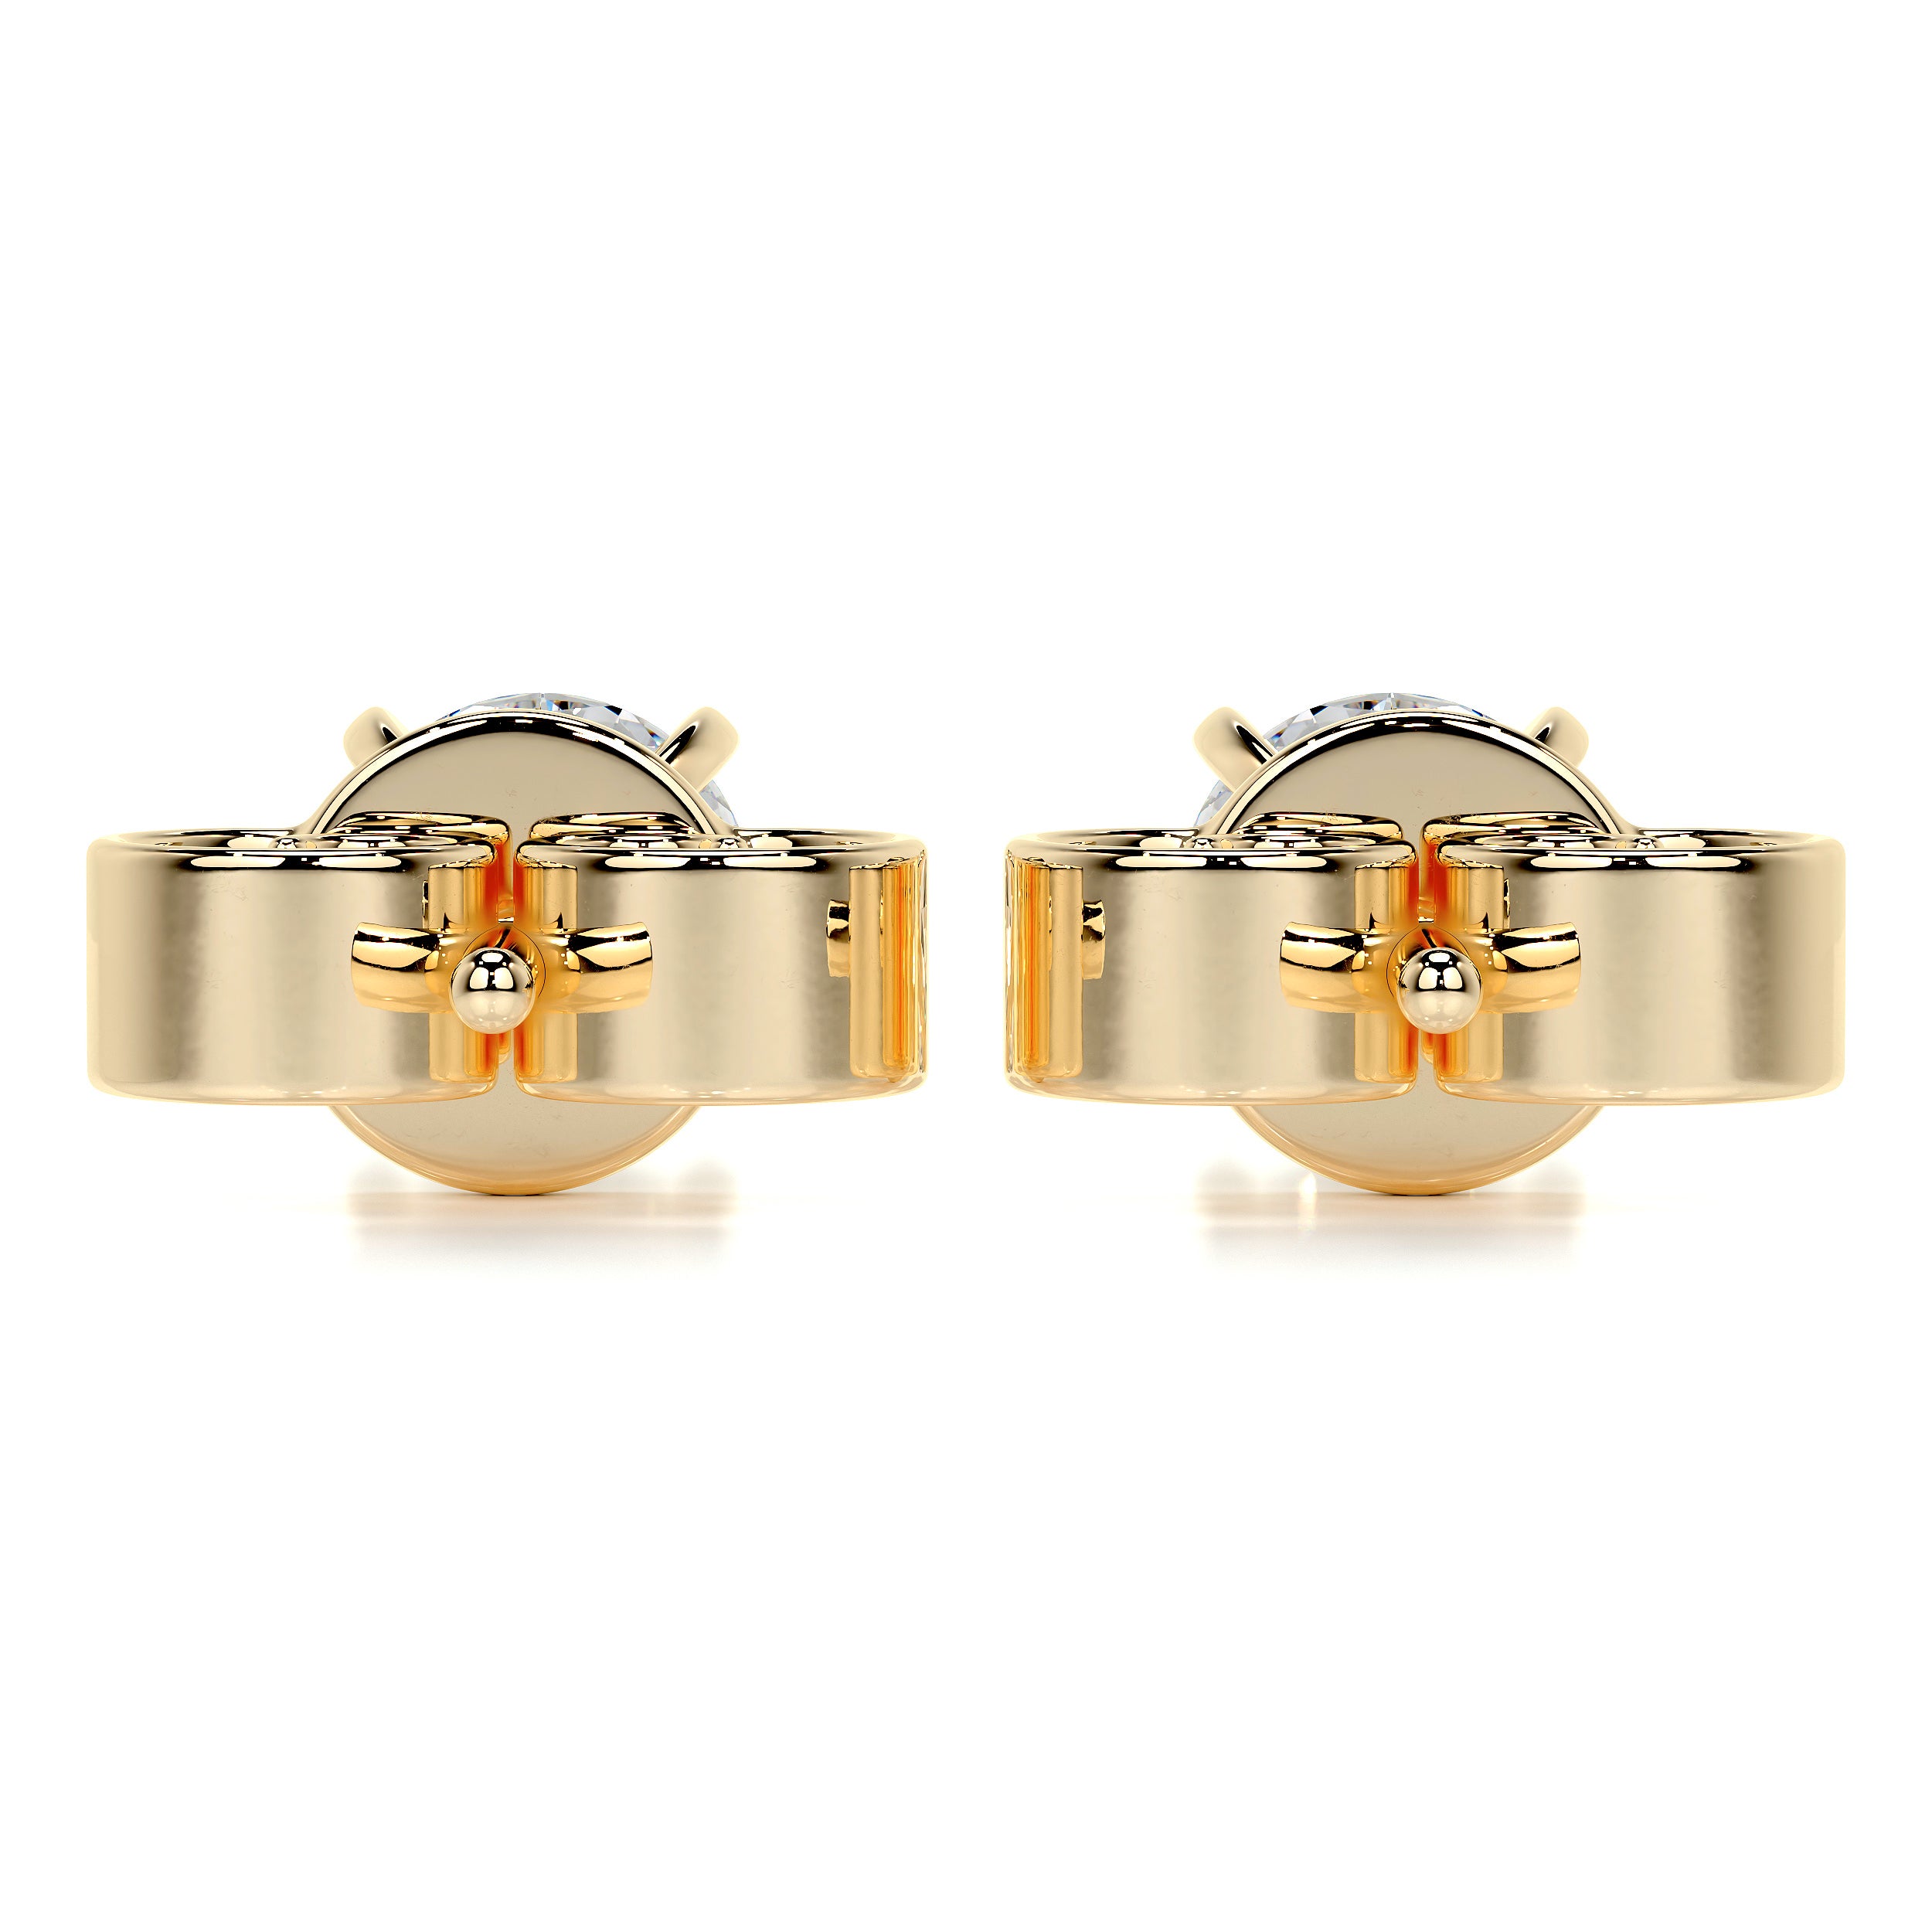 Allen Diamond Earrings   (2 Carat) -18K Yellow Gold